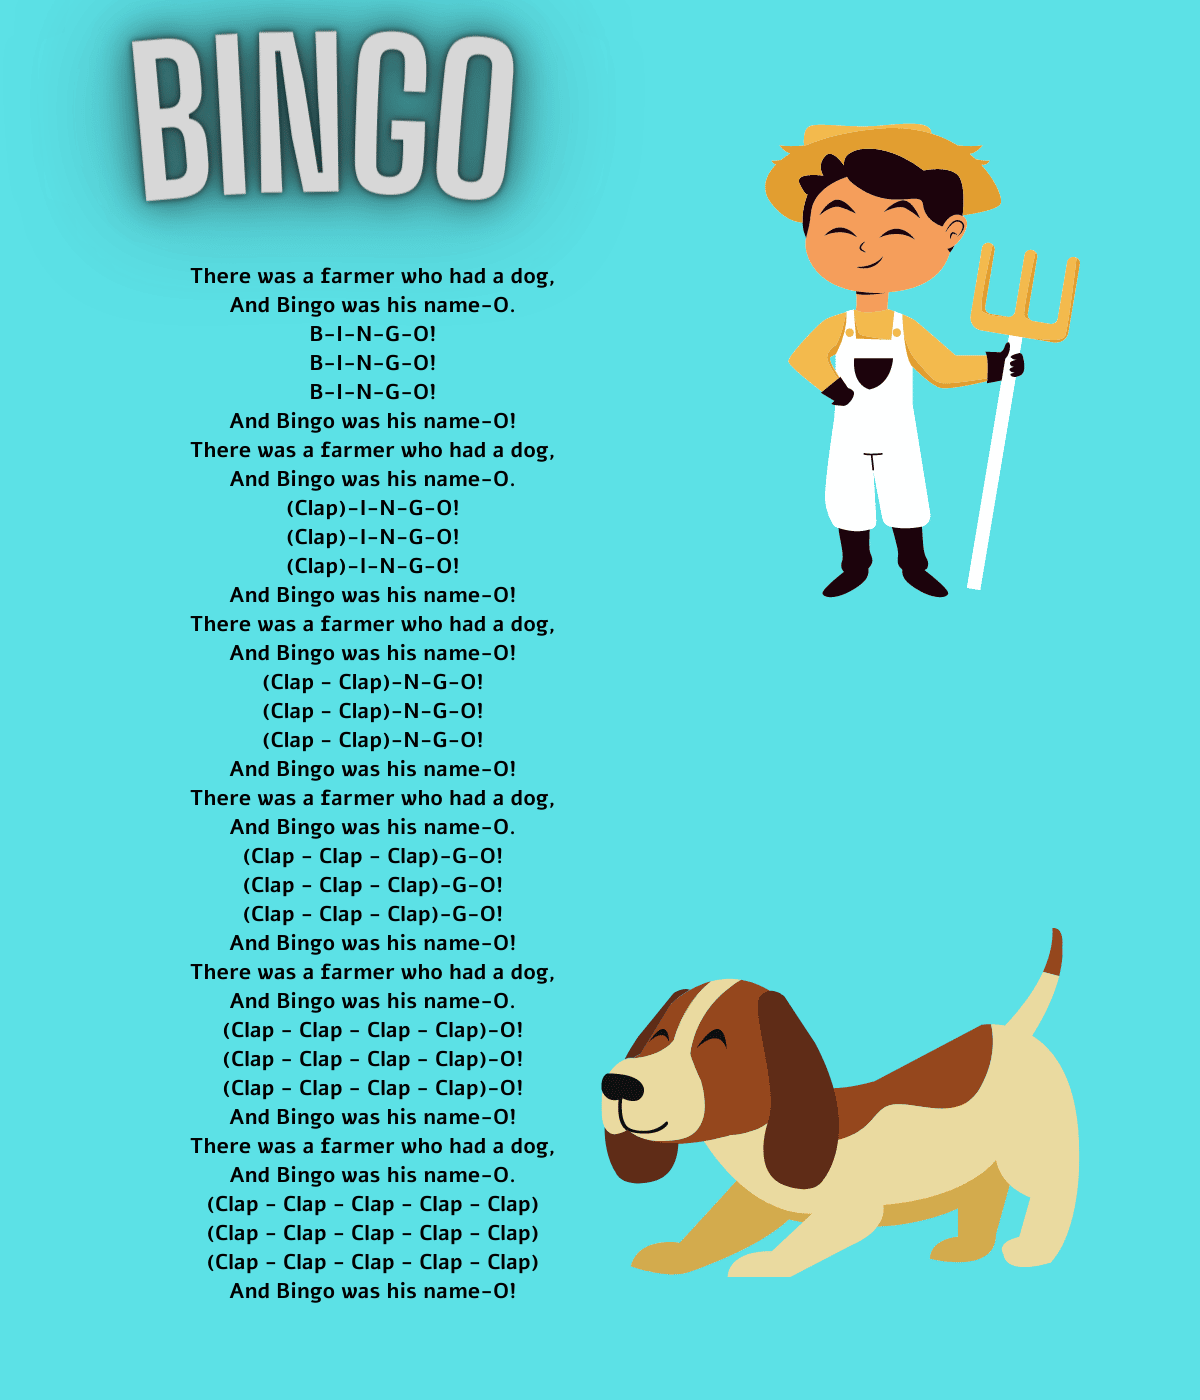 Bingo lyrics